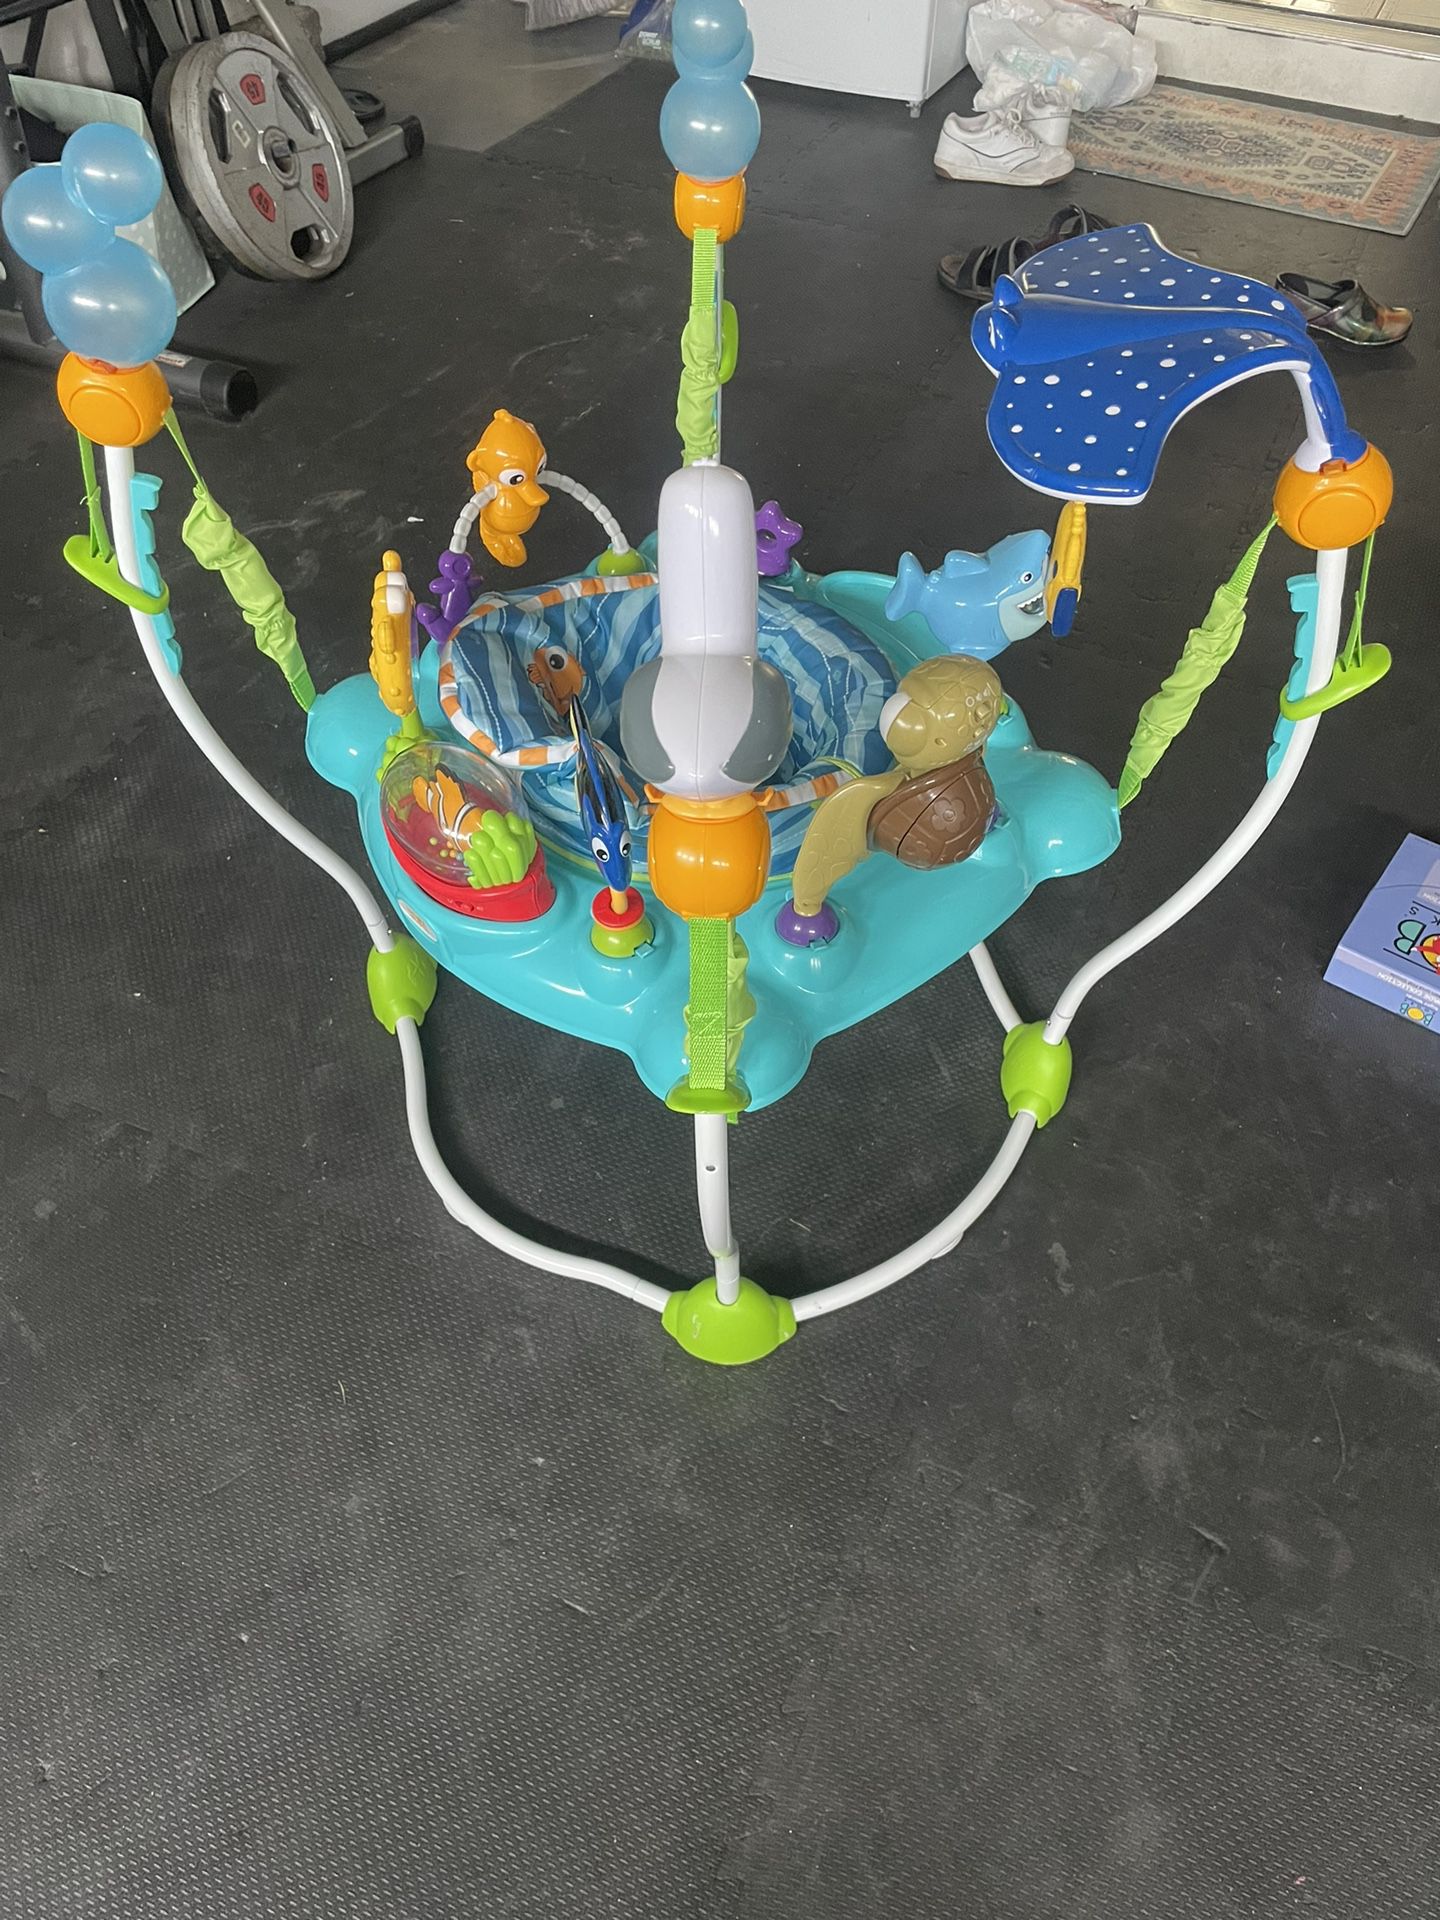 Disney Baby Finding Nemo: Sea of Activities Jumper